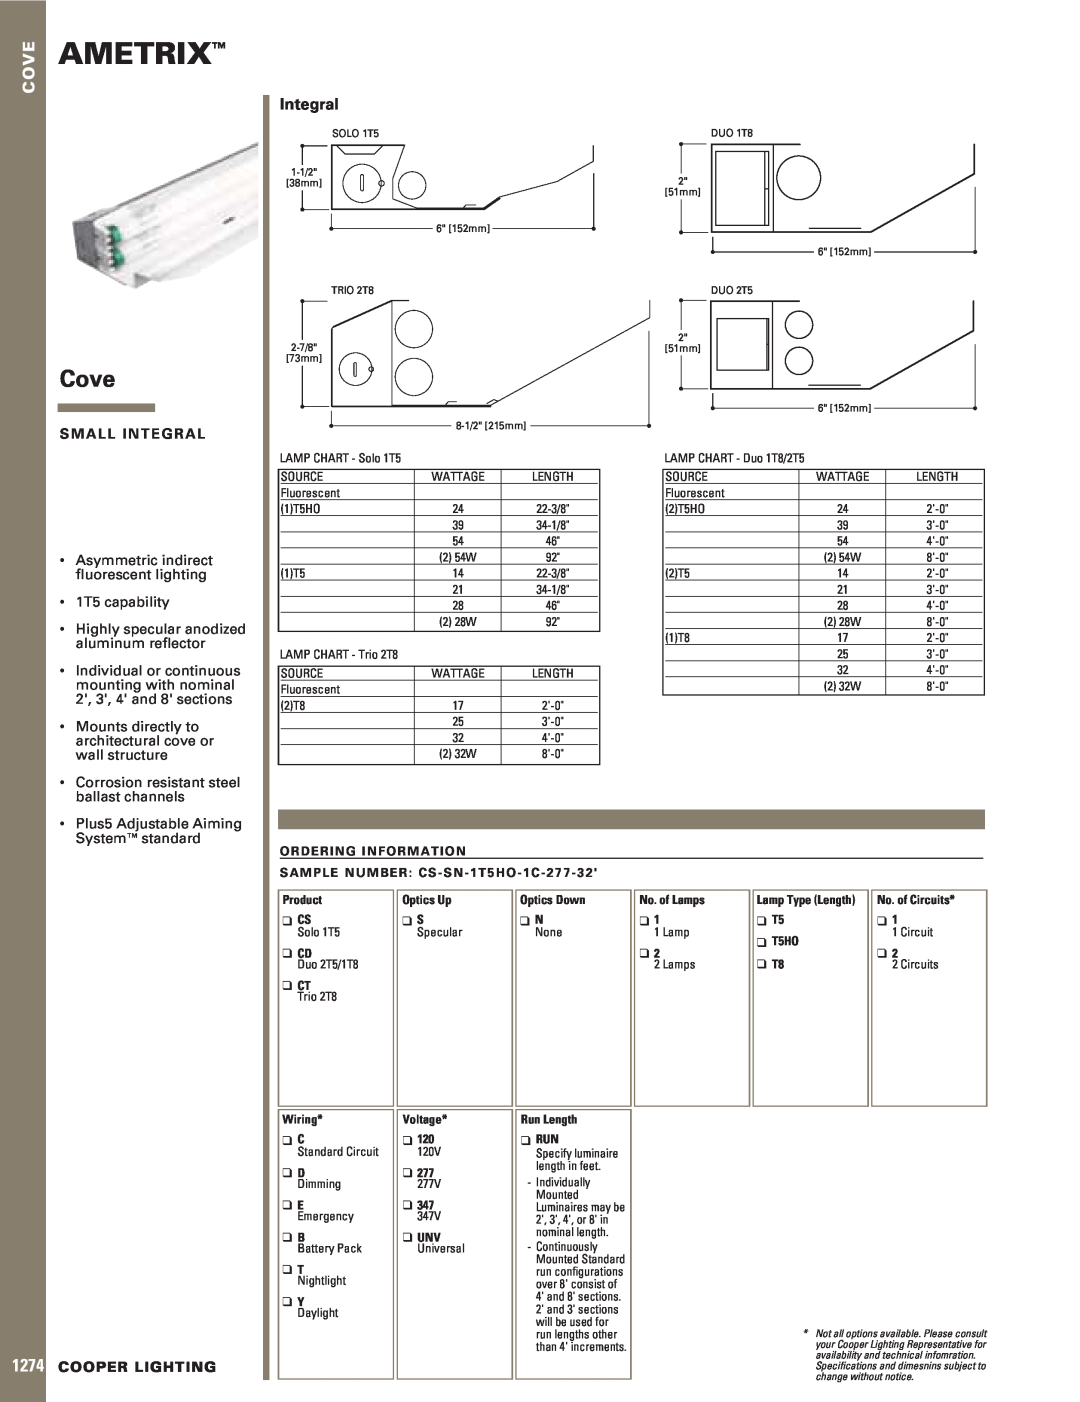 Cooper Lighting Cove specifications Ametrix, Integral, S M A L L I N T E G R A L, Asymmetric indirect ﬂuorescent lighting 